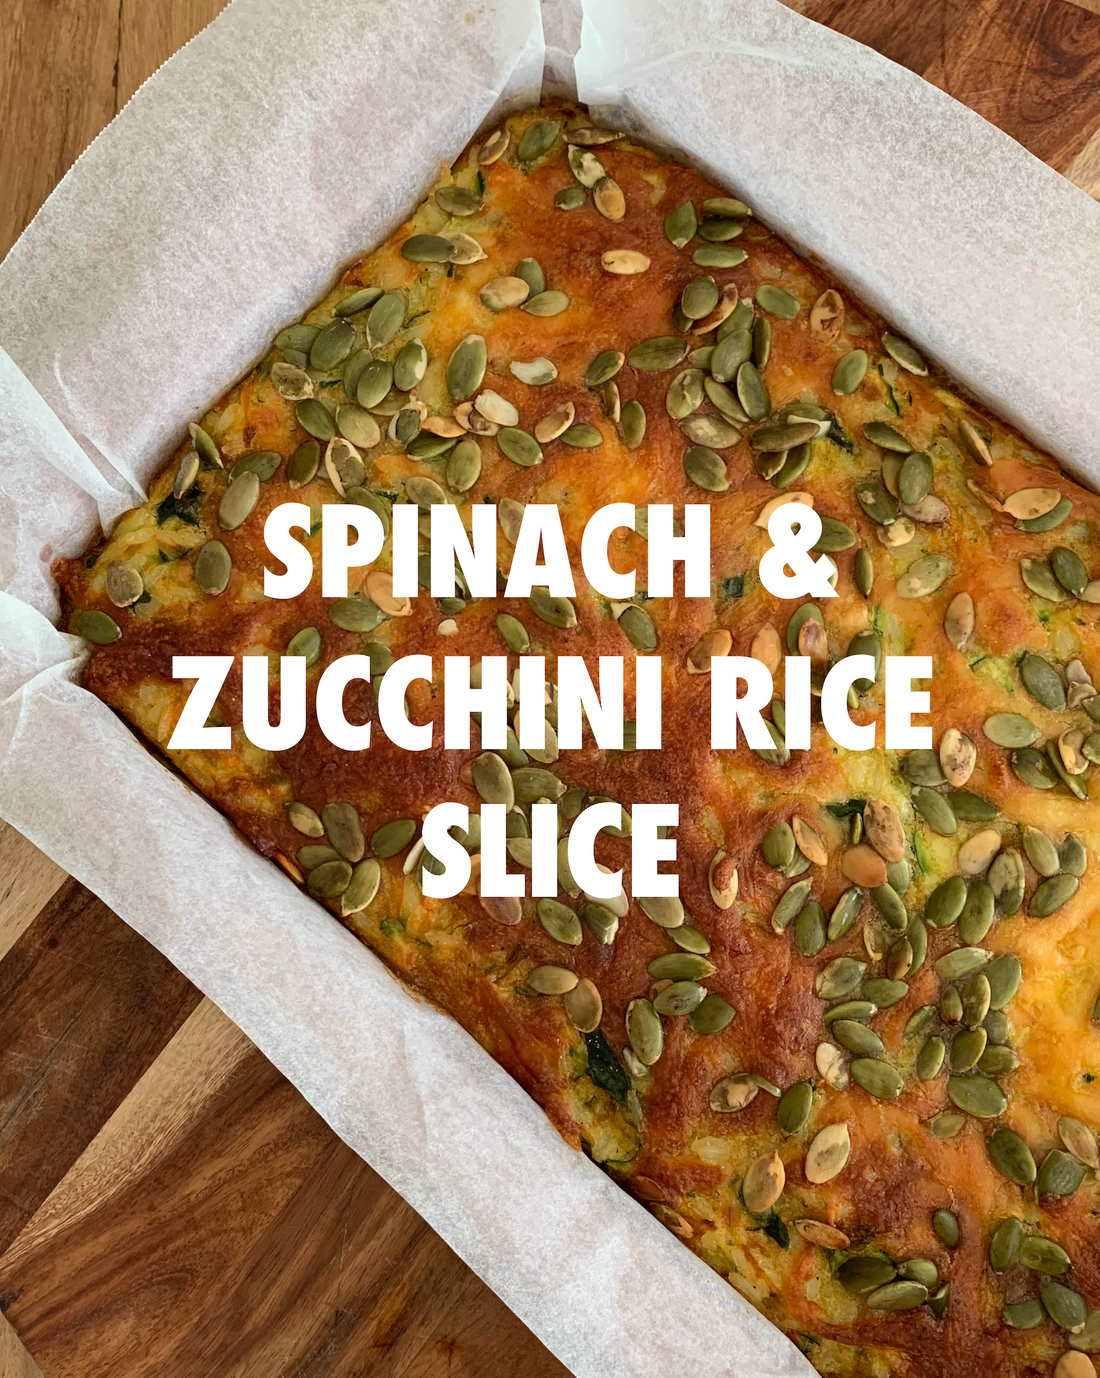 Spinach & Zucchini Rice Slice